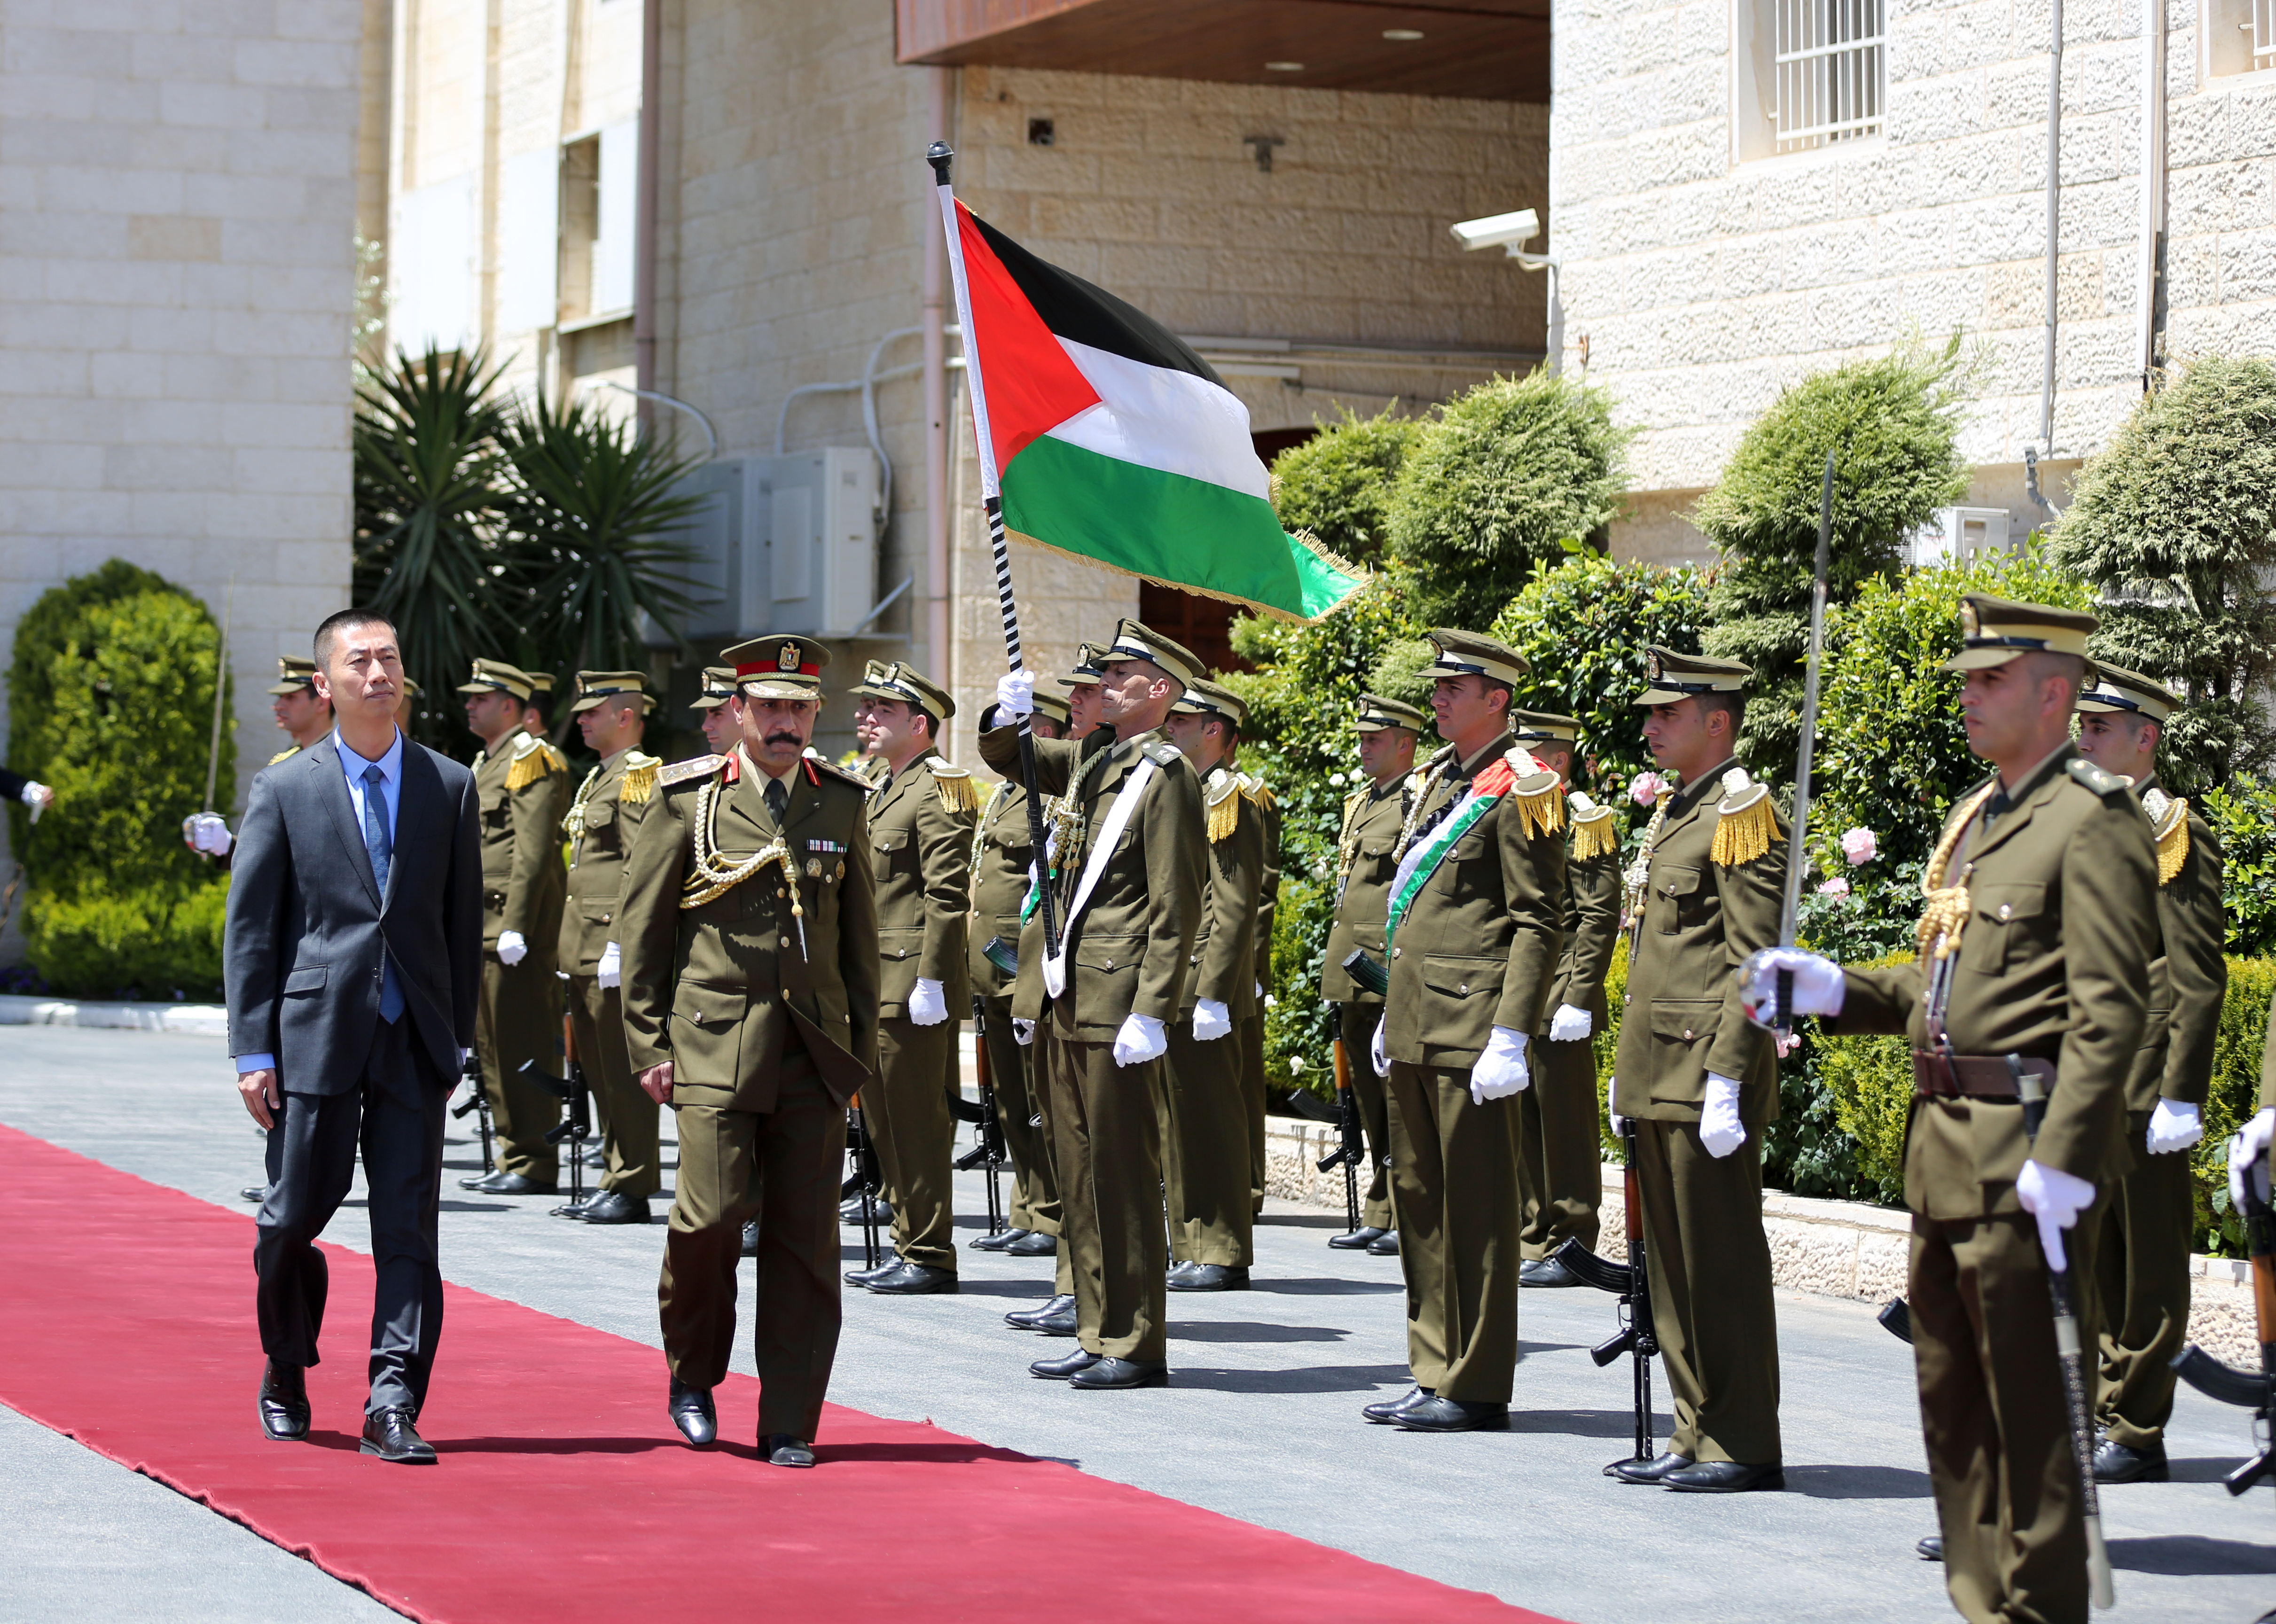 الرئيس يتقبل أوراق اعتماد السفير الصيني الجديد لدى فلسطين